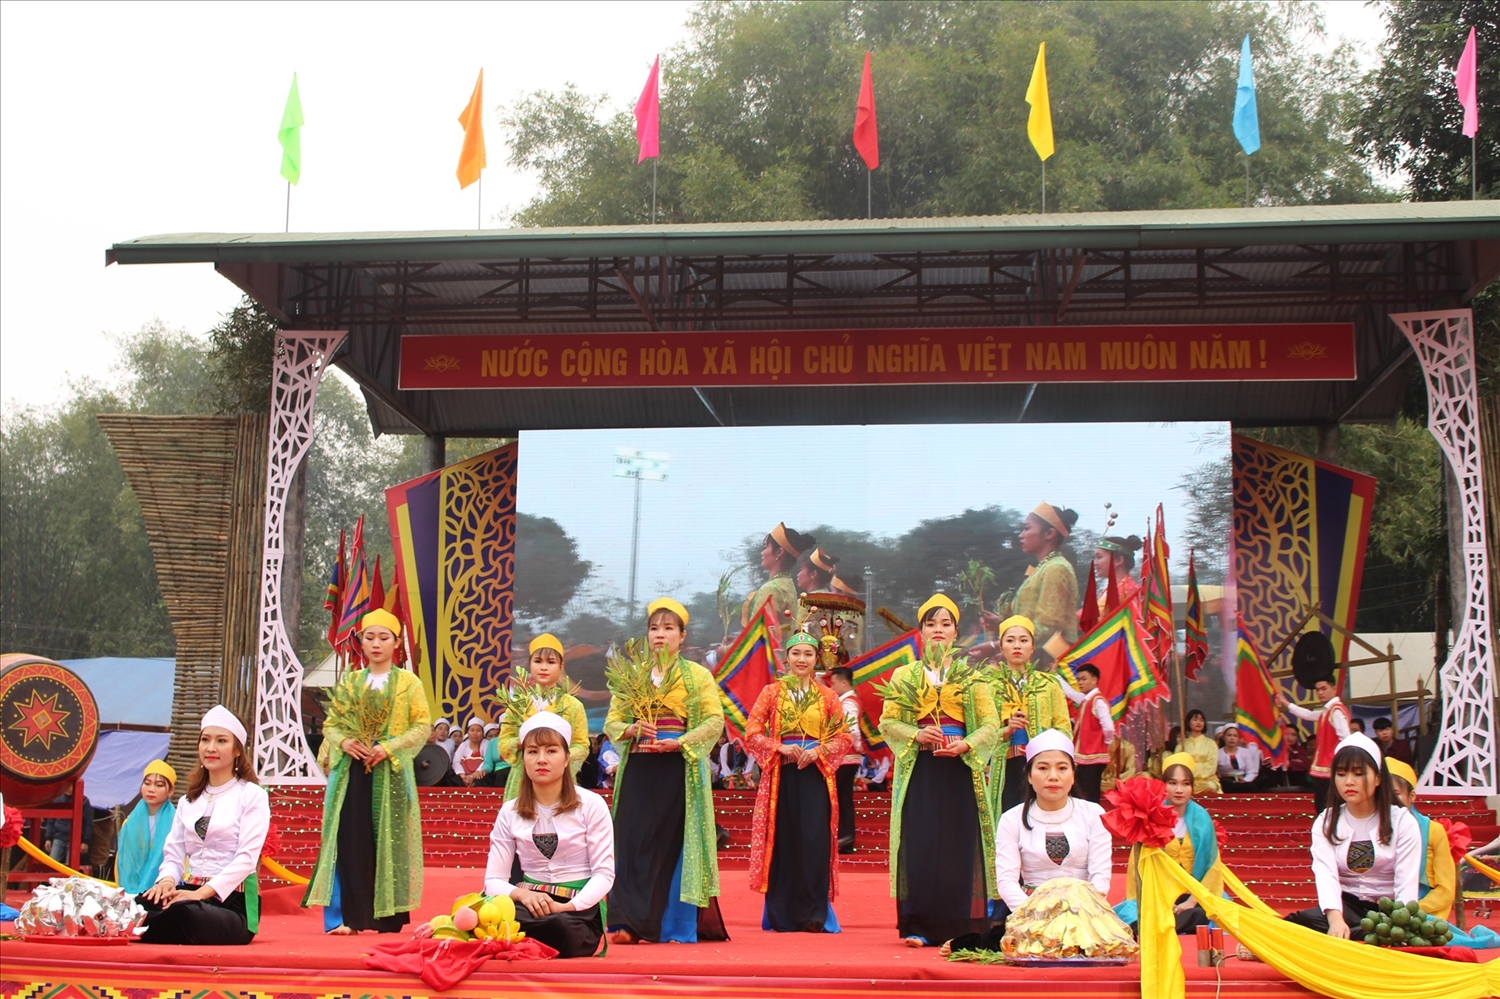 Khai hạ dân tộc Mường tỉnh Hòa Bình là lễ hội dân gian truyền thống lớn nhất của người Mường Hòa Bình. (Ảnh: Thu Thủy)